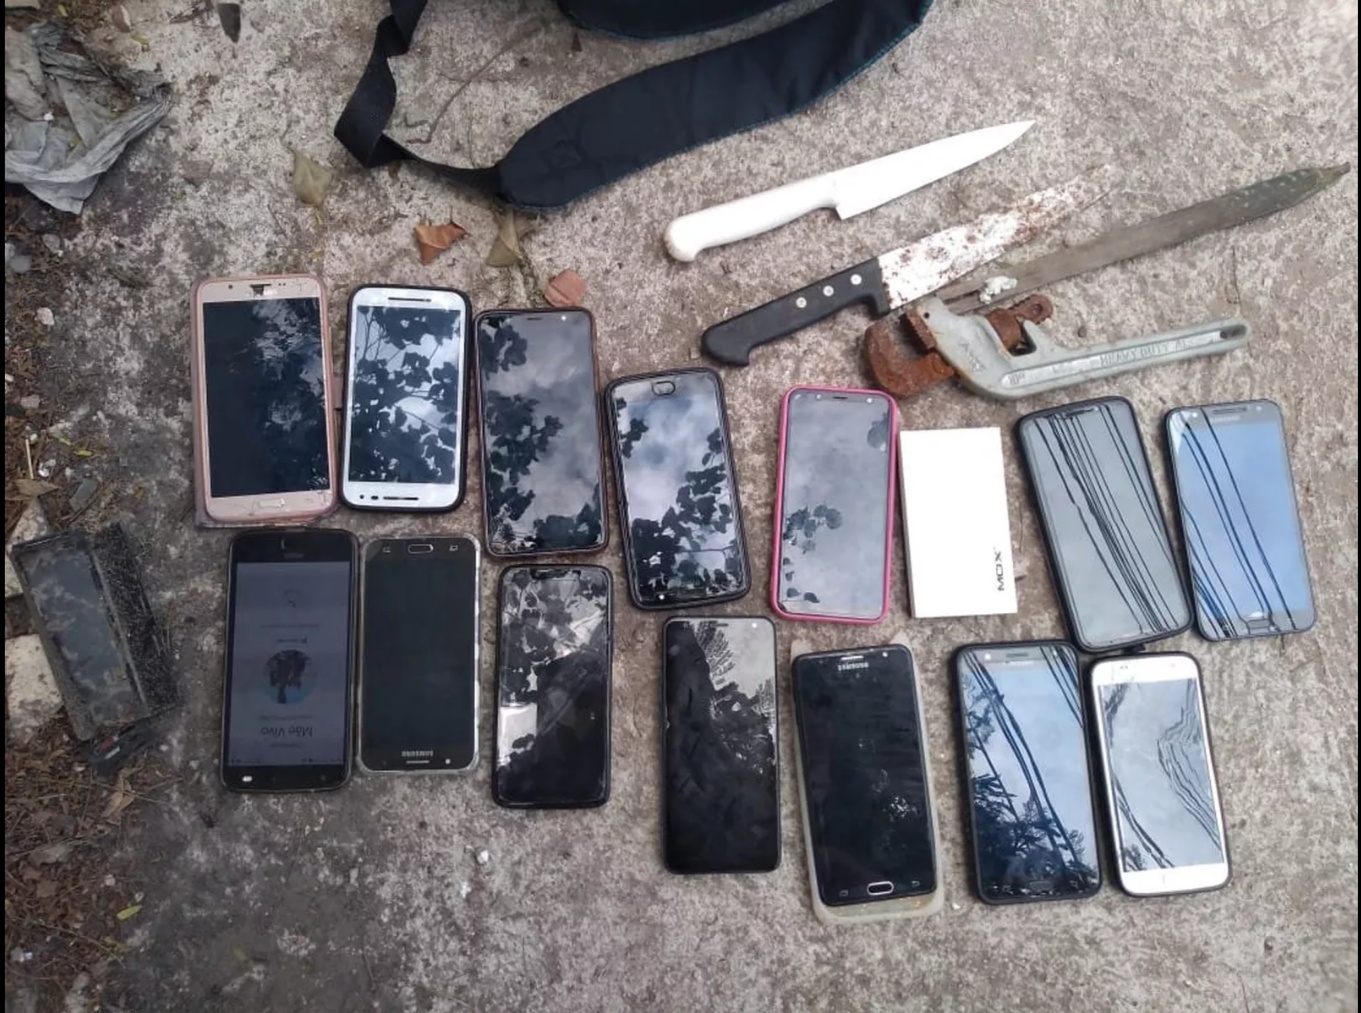 Policiais encontraram com o suspeito armas brancas e os celulares das vítimas // Foto: Divulgação PMERJ